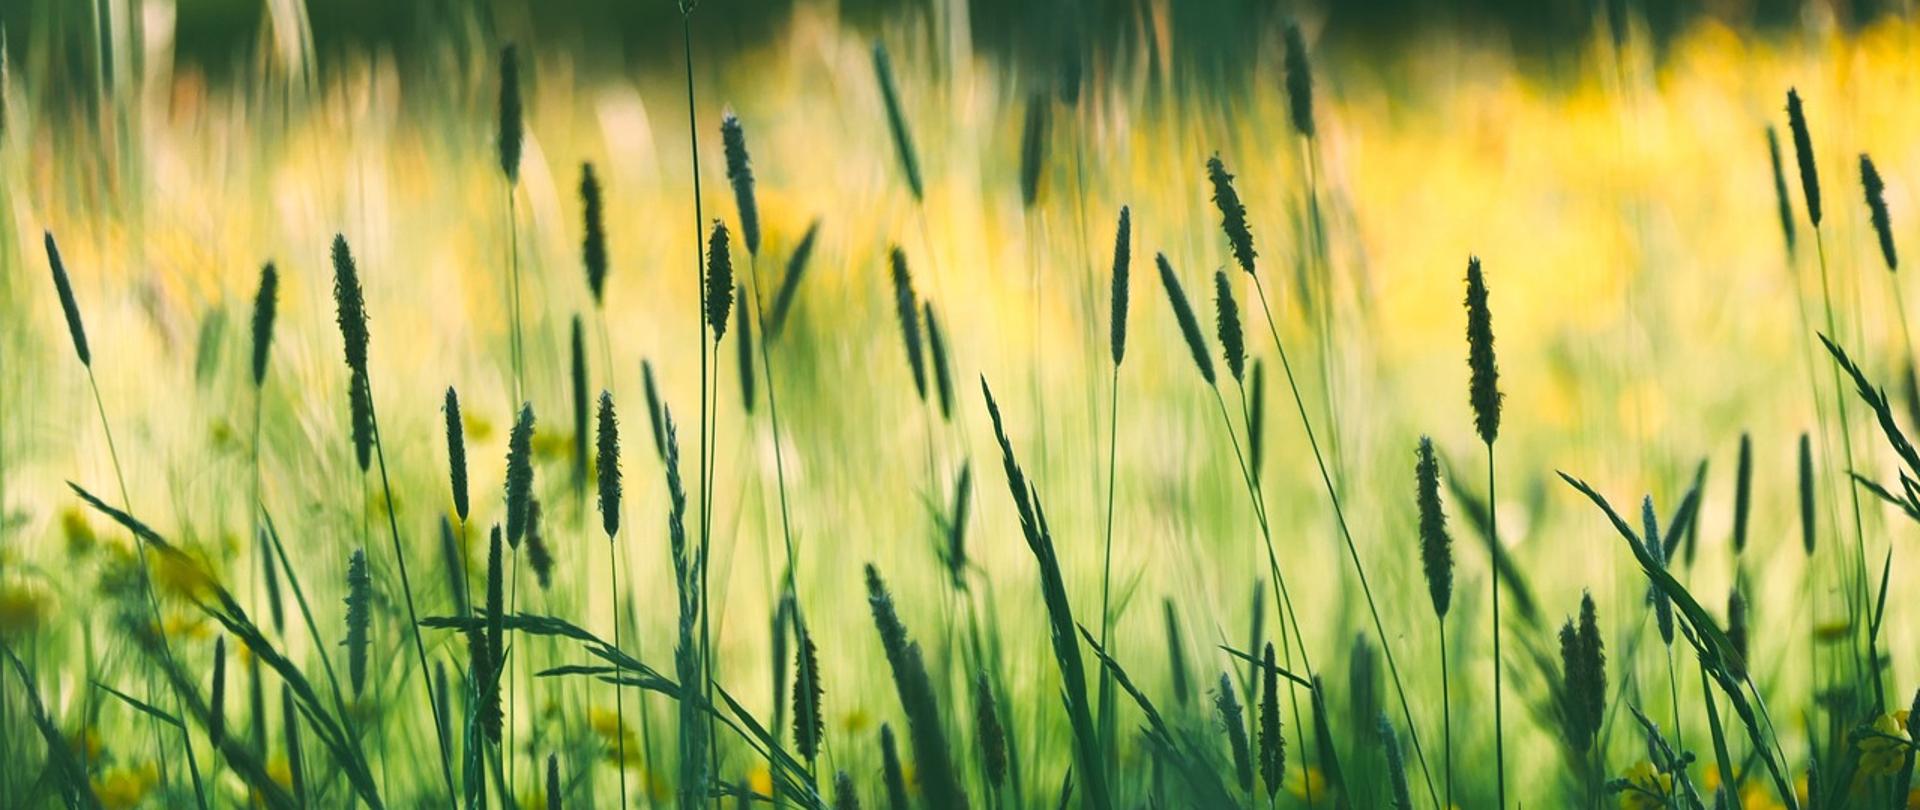 zdjęcie kwitnącej trawy, na drugim planie przebijające się promienie słoneczne i pole trawy